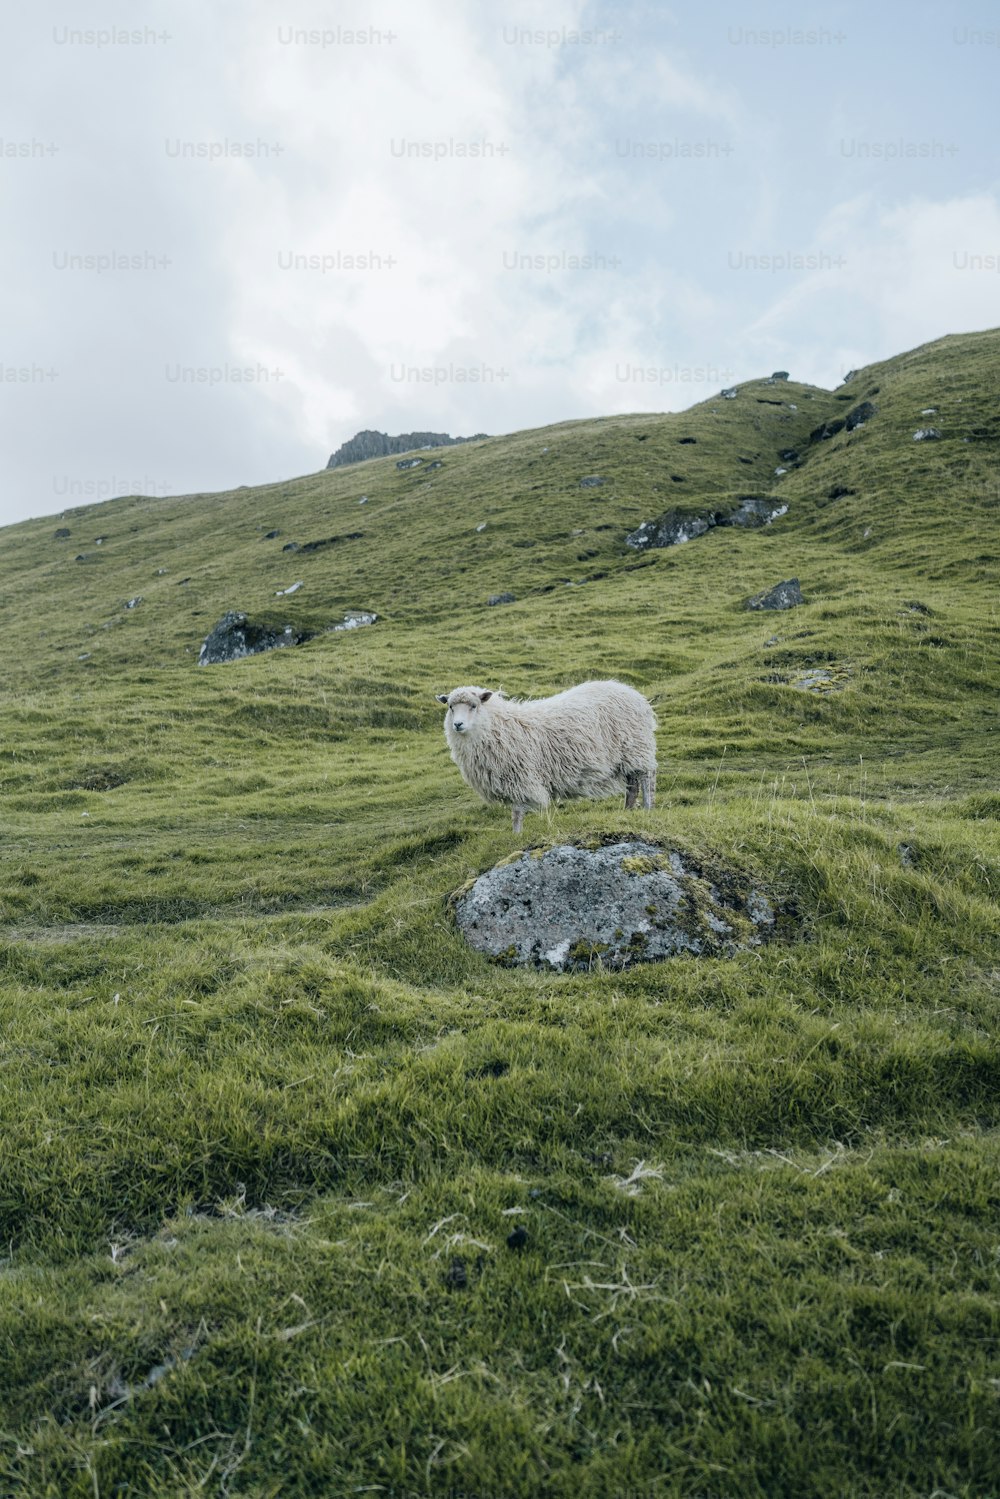 Una oveja blanca de pie en una exuberante ladera verde